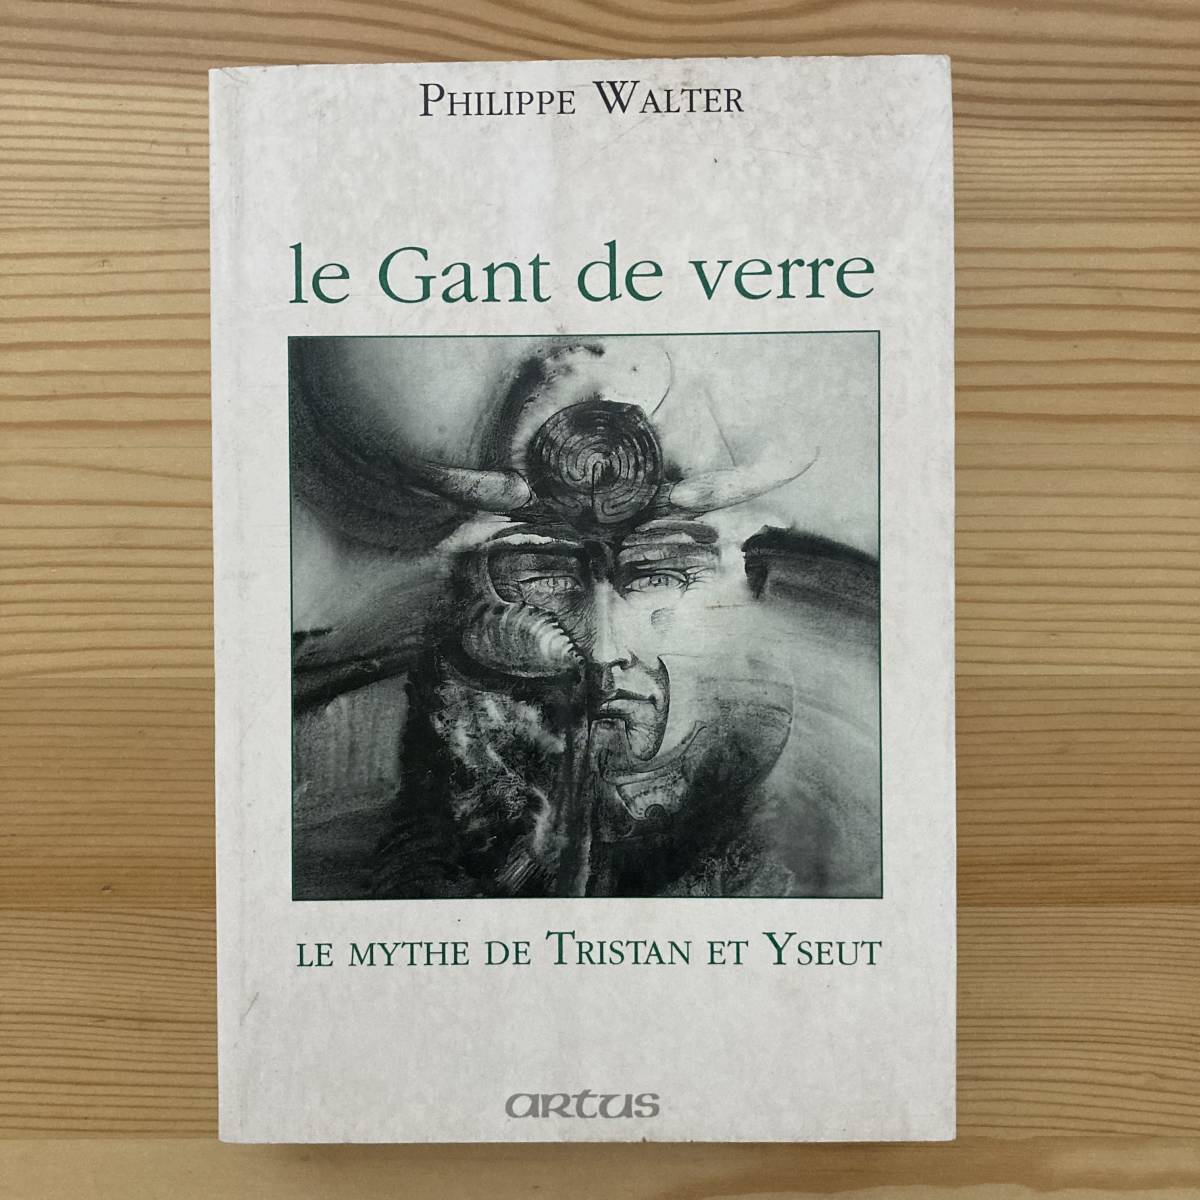 【仏語洋書】LE GANT DE VERRE / フィリップ・ヴァルテール Philippe Walter（著）【トリスタンとイズー 中世フランス文学】_画像1